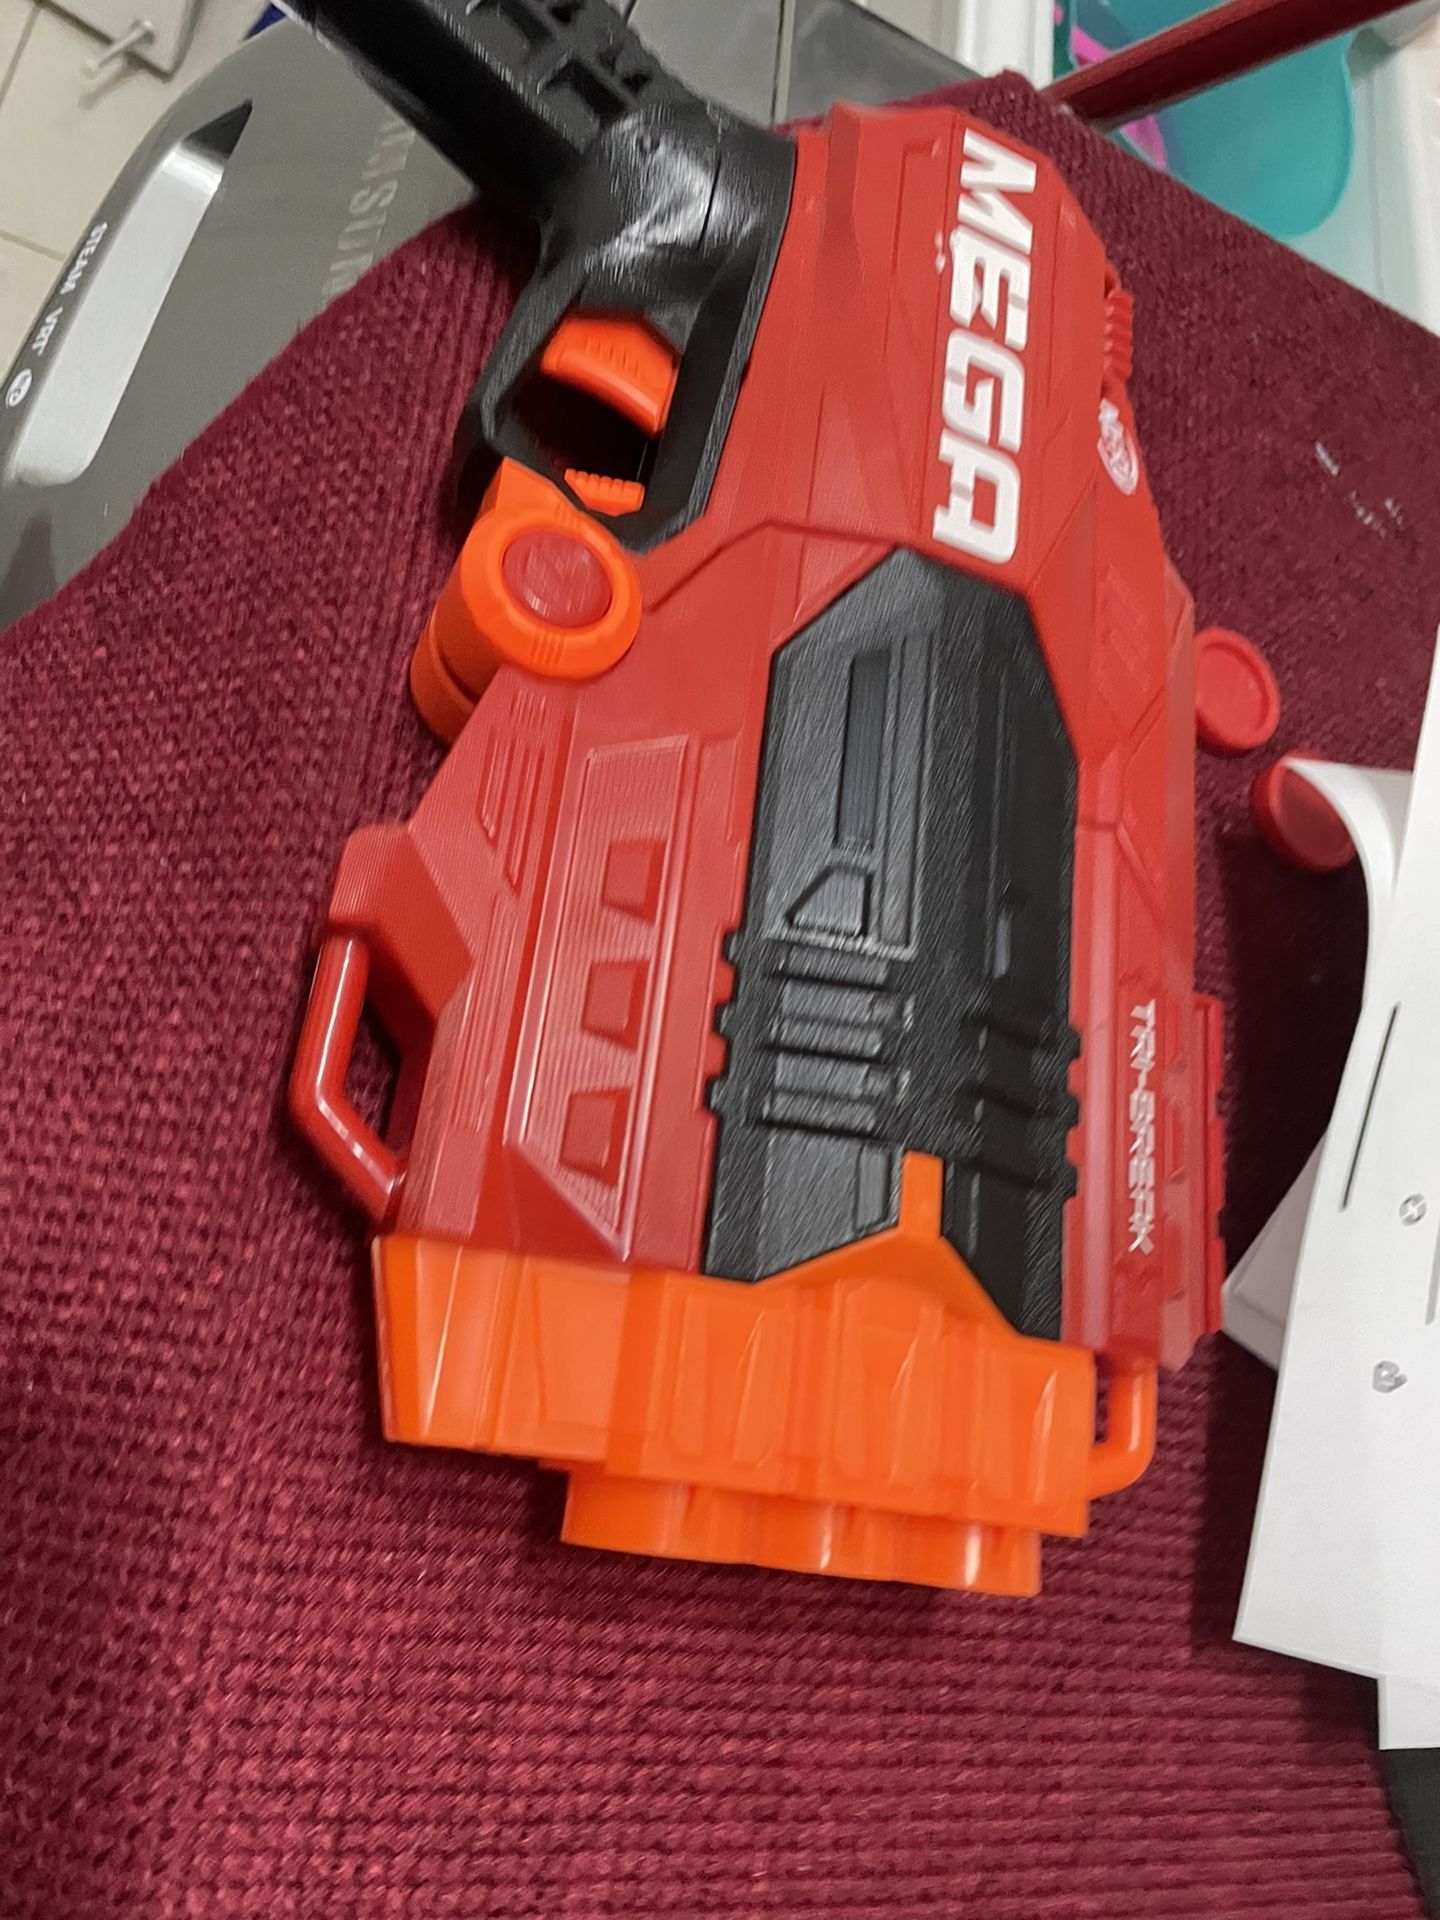 Nerf Toy Gun Mega 